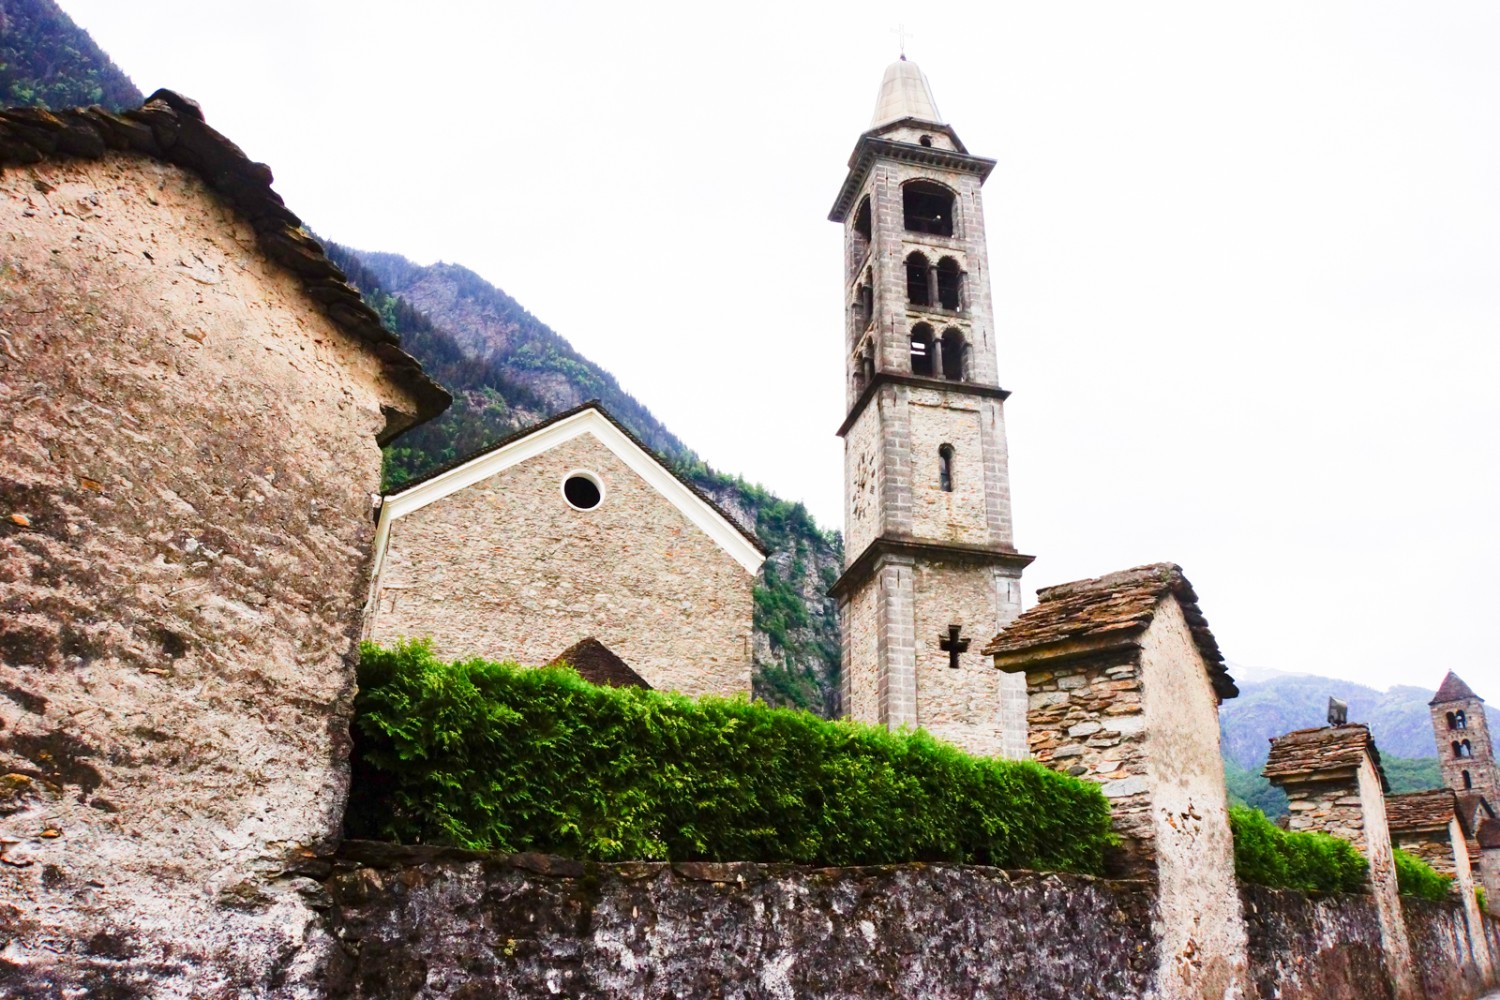 Am Ziel in Giornico warten noch drei Kirchen auf die Besucher.